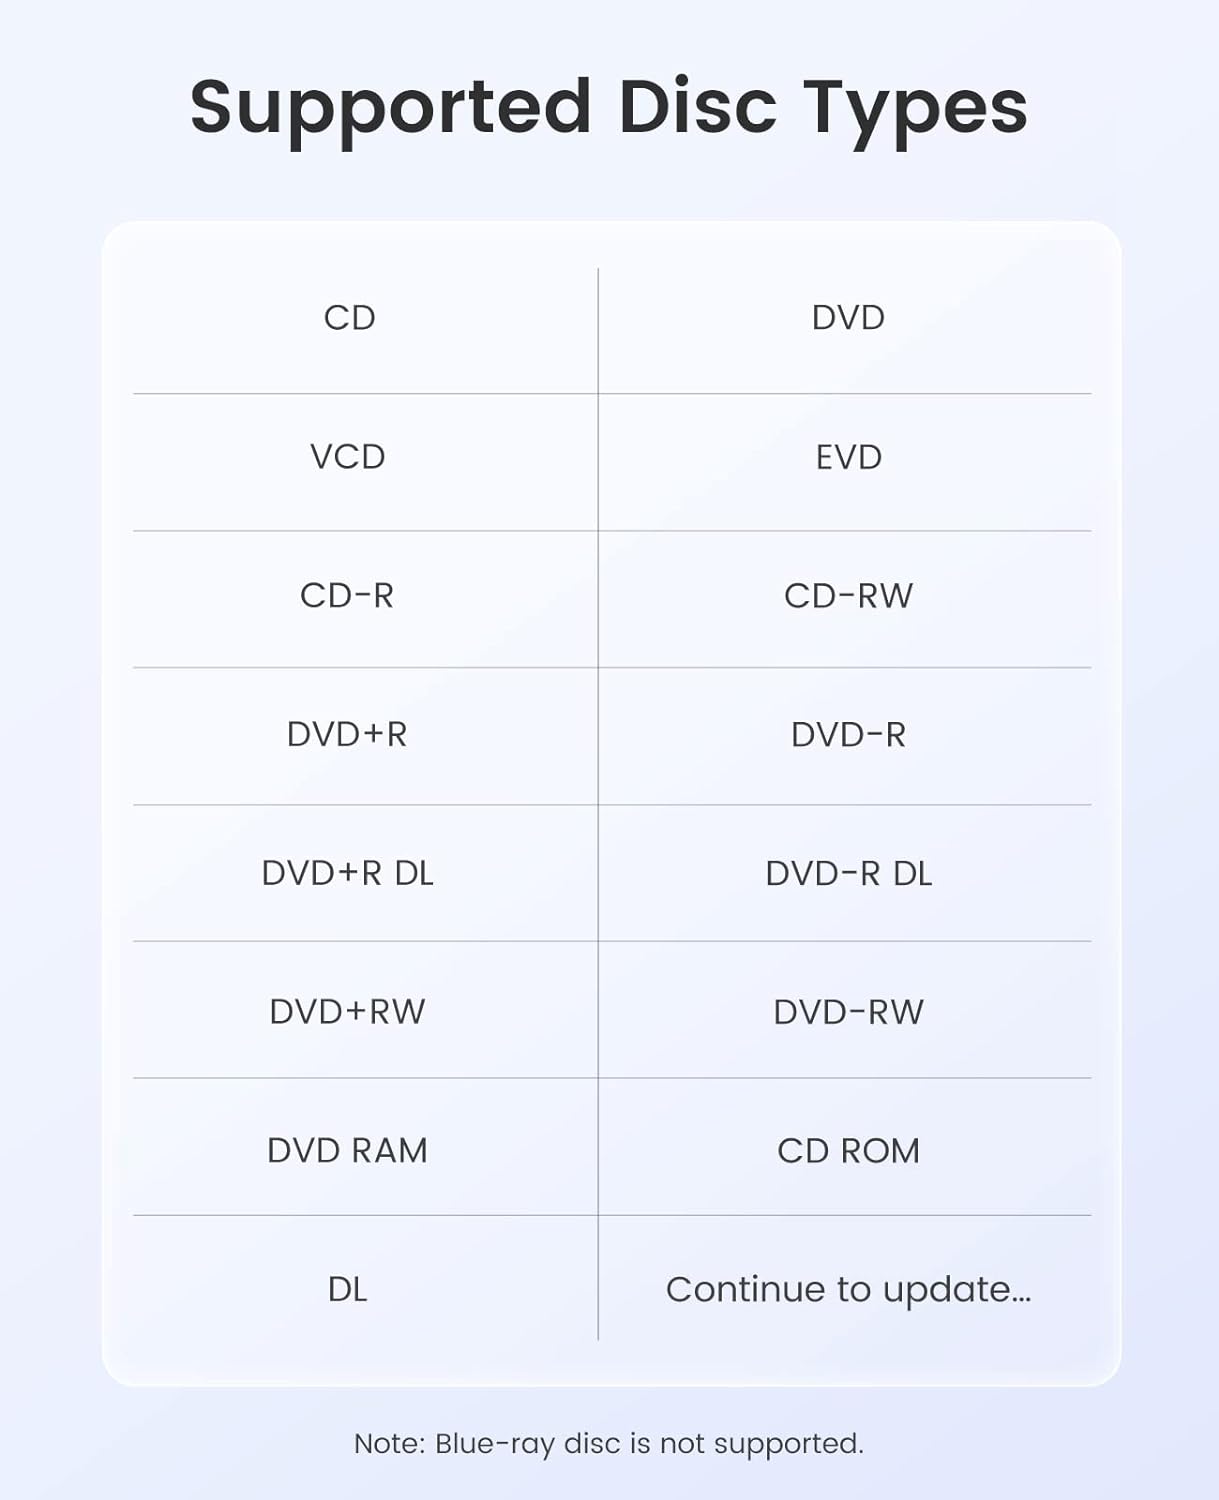 Orico ORHU3-01 DVD-RW Type-C/ A + USB HUB + Card Reader